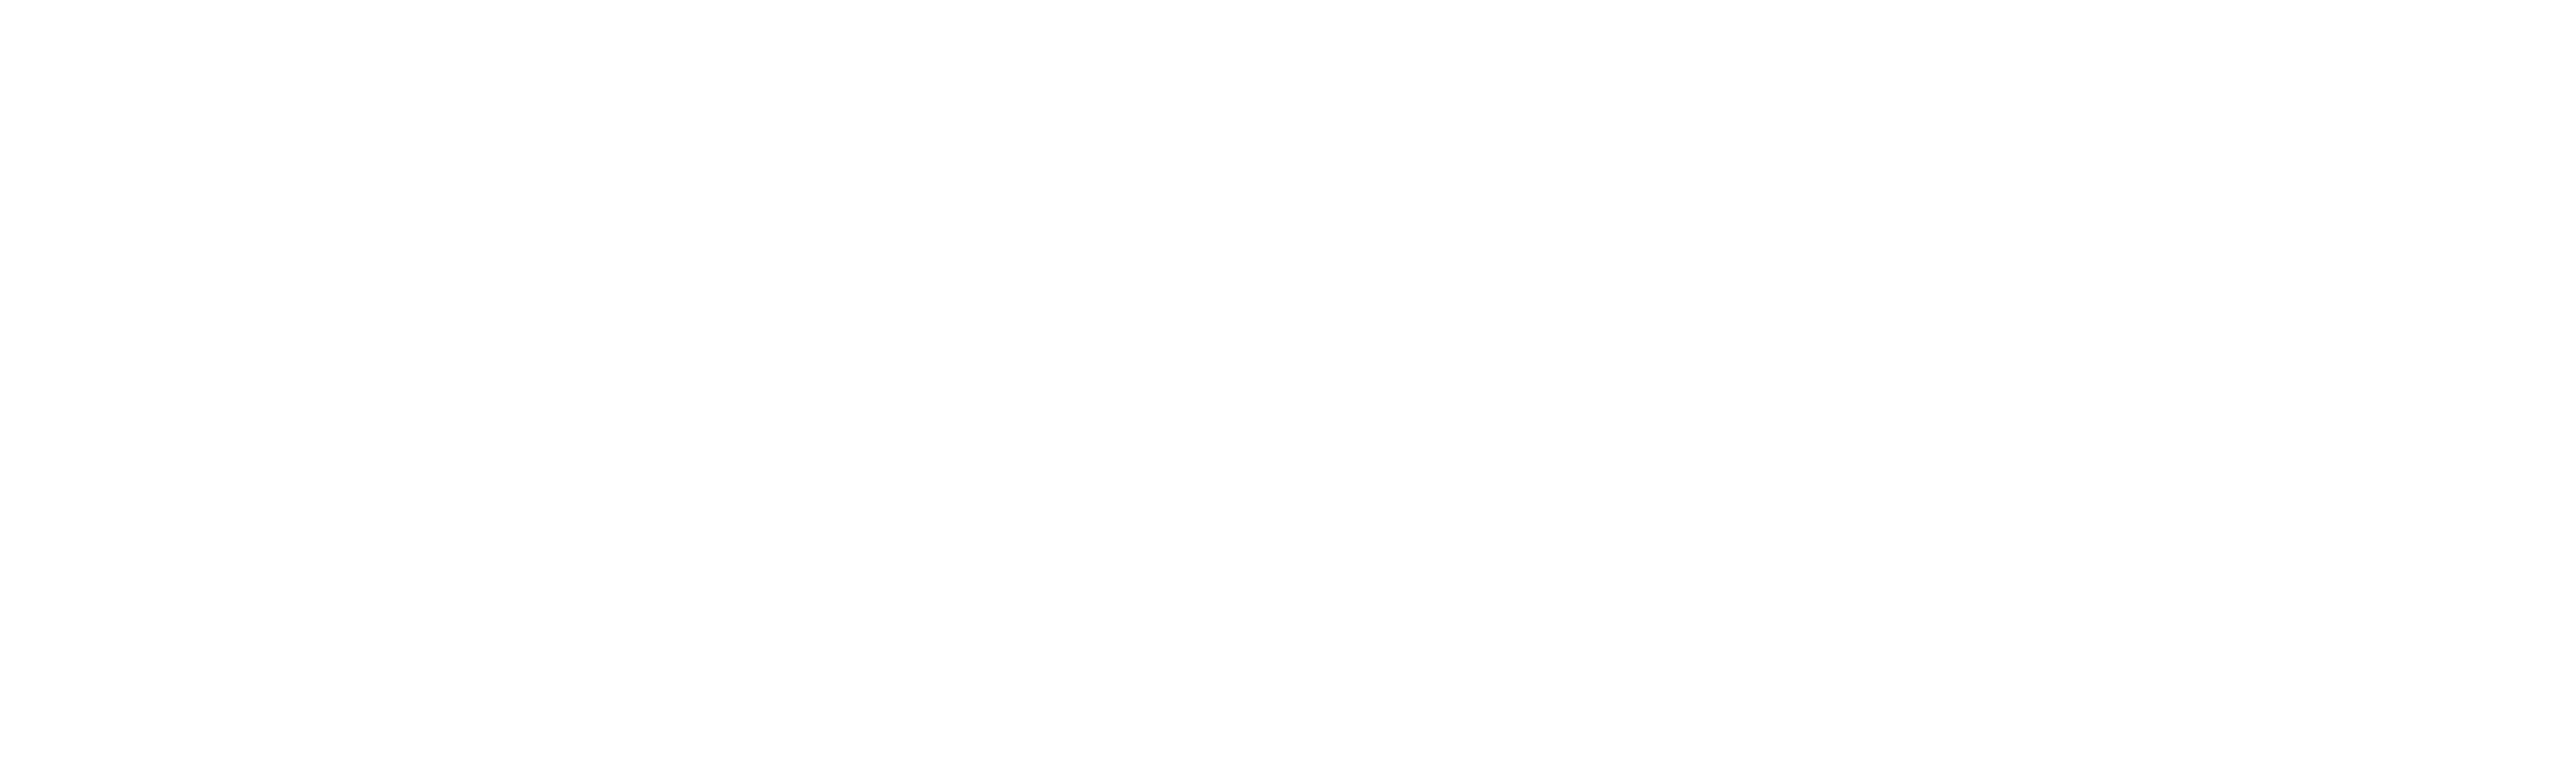 GARAGE MARIE SAINT CLAIR